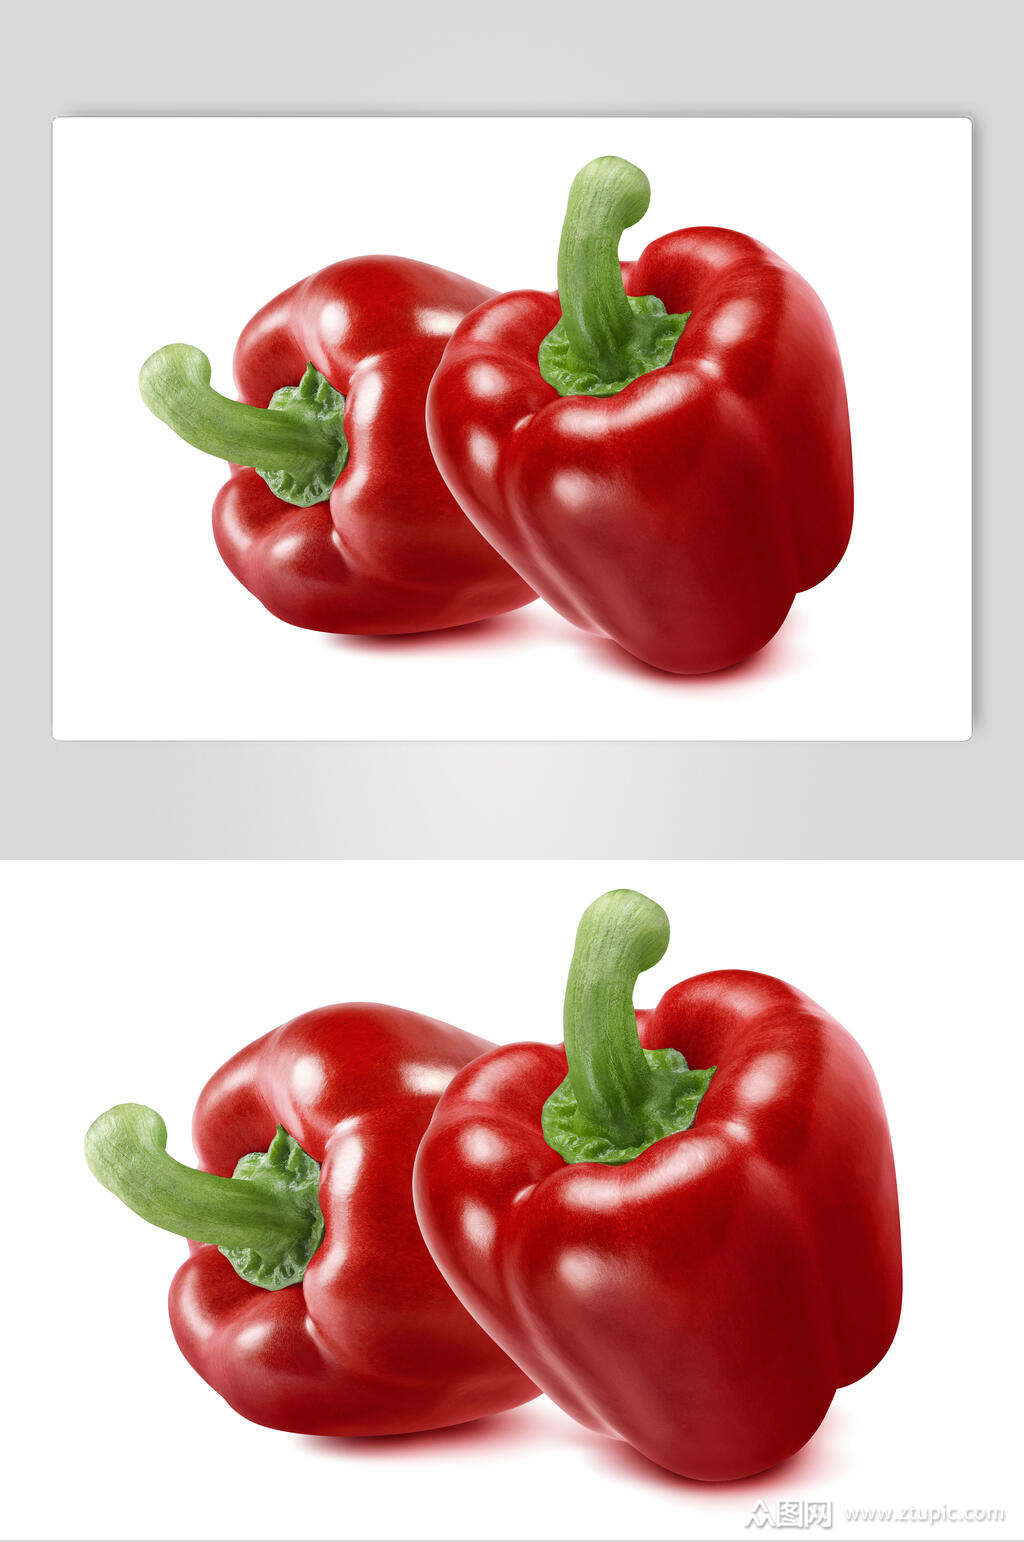 众图网提供视觉美观的西洋红甜椒彩椒蔬菜图片素材下载,本次作品主题